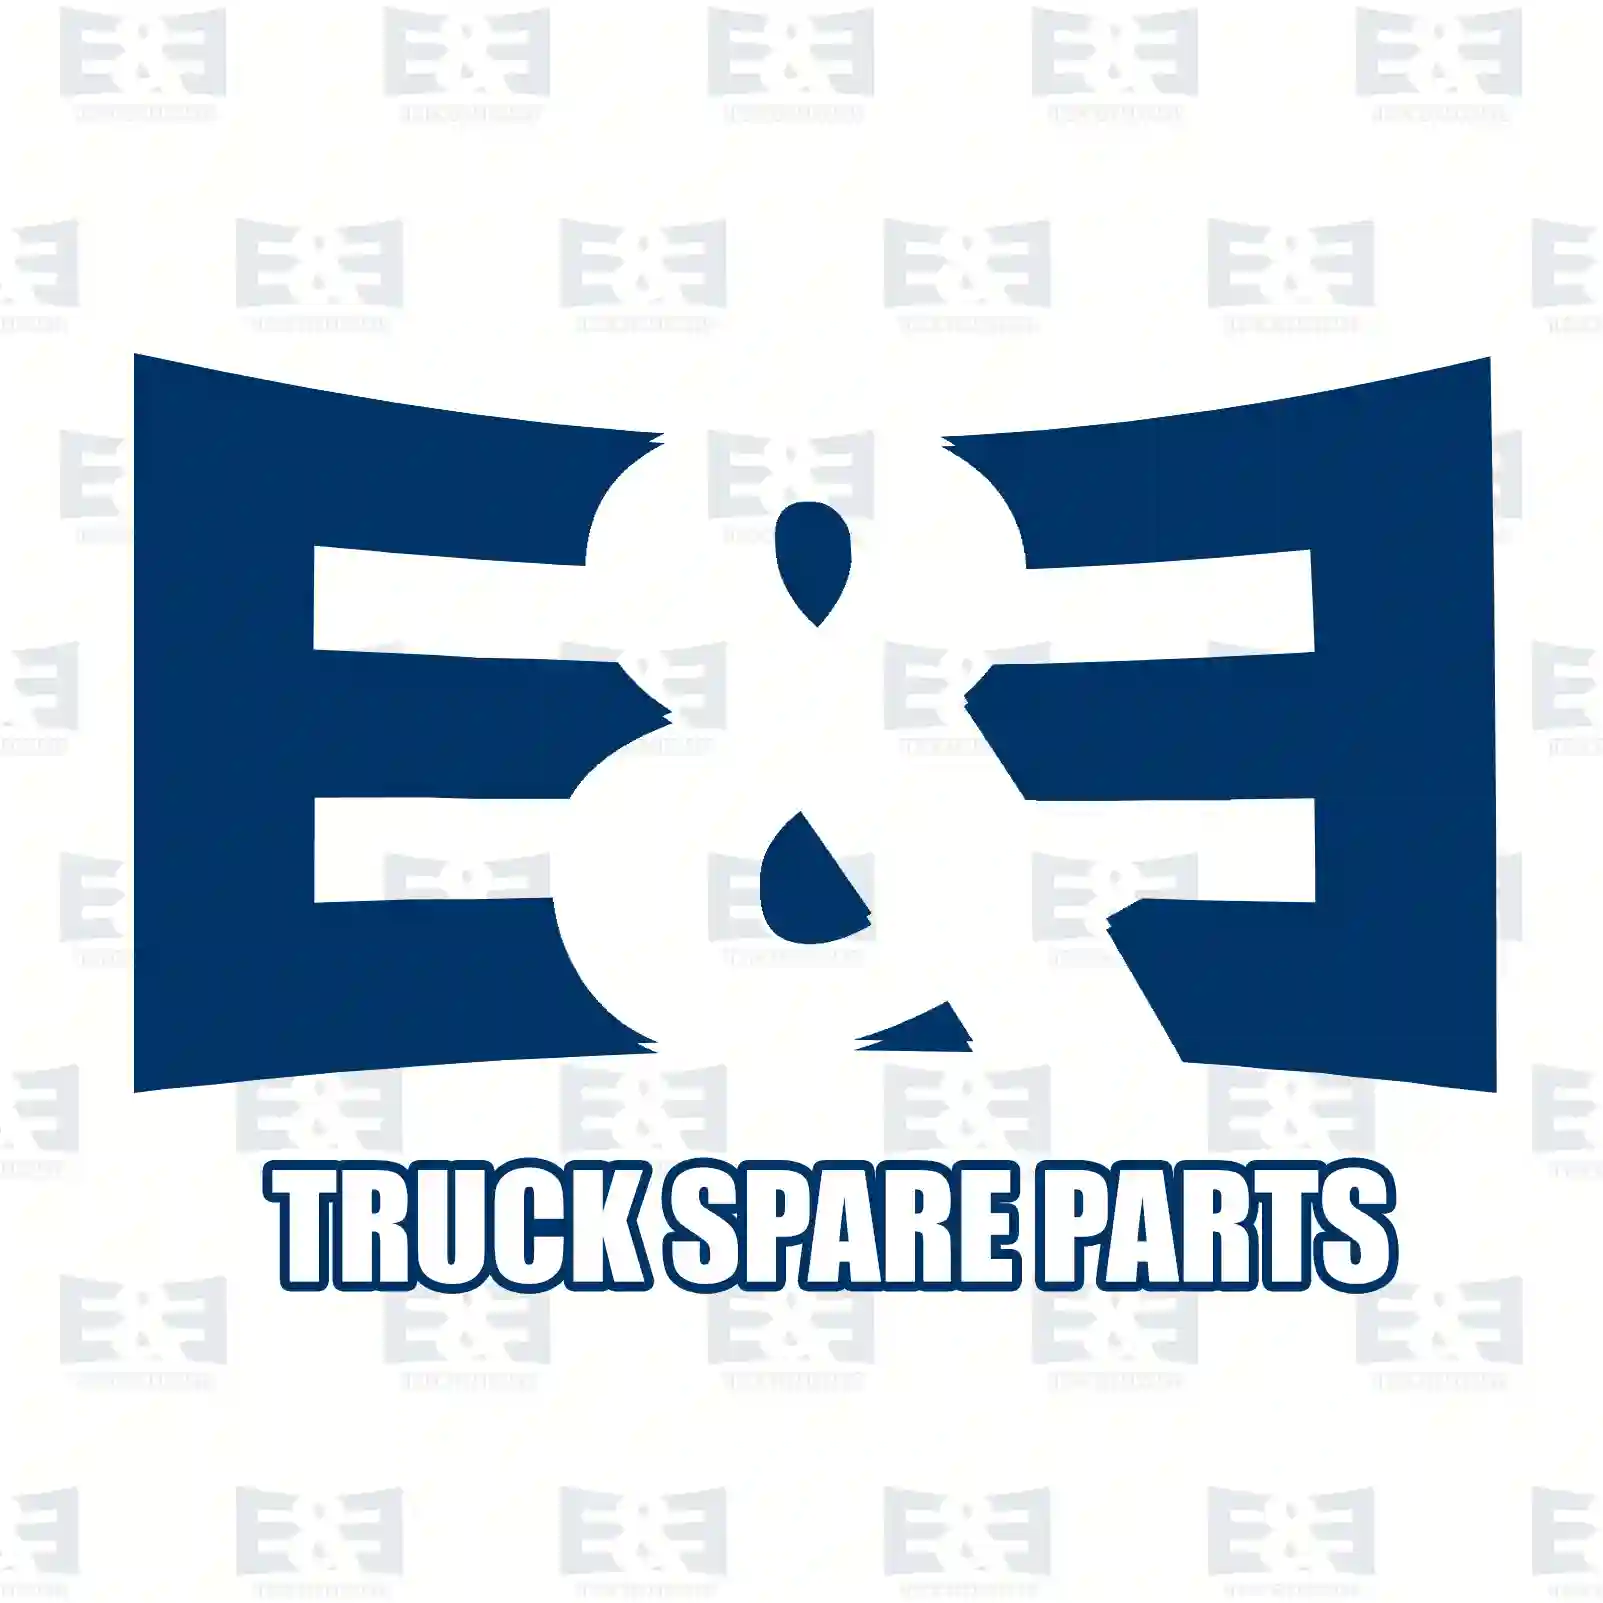 Fan clutch, 2E2201281, 62121302, 0621213 ||  2E2201281 E&E Truck Spare Parts | Truck Spare Parts, Auotomotive Spare Parts Fan clutch, 2E2201281, 62121302, 0621213 ||  2E2201281 E&E Truck Spare Parts | Truck Spare Parts, Auotomotive Spare Parts